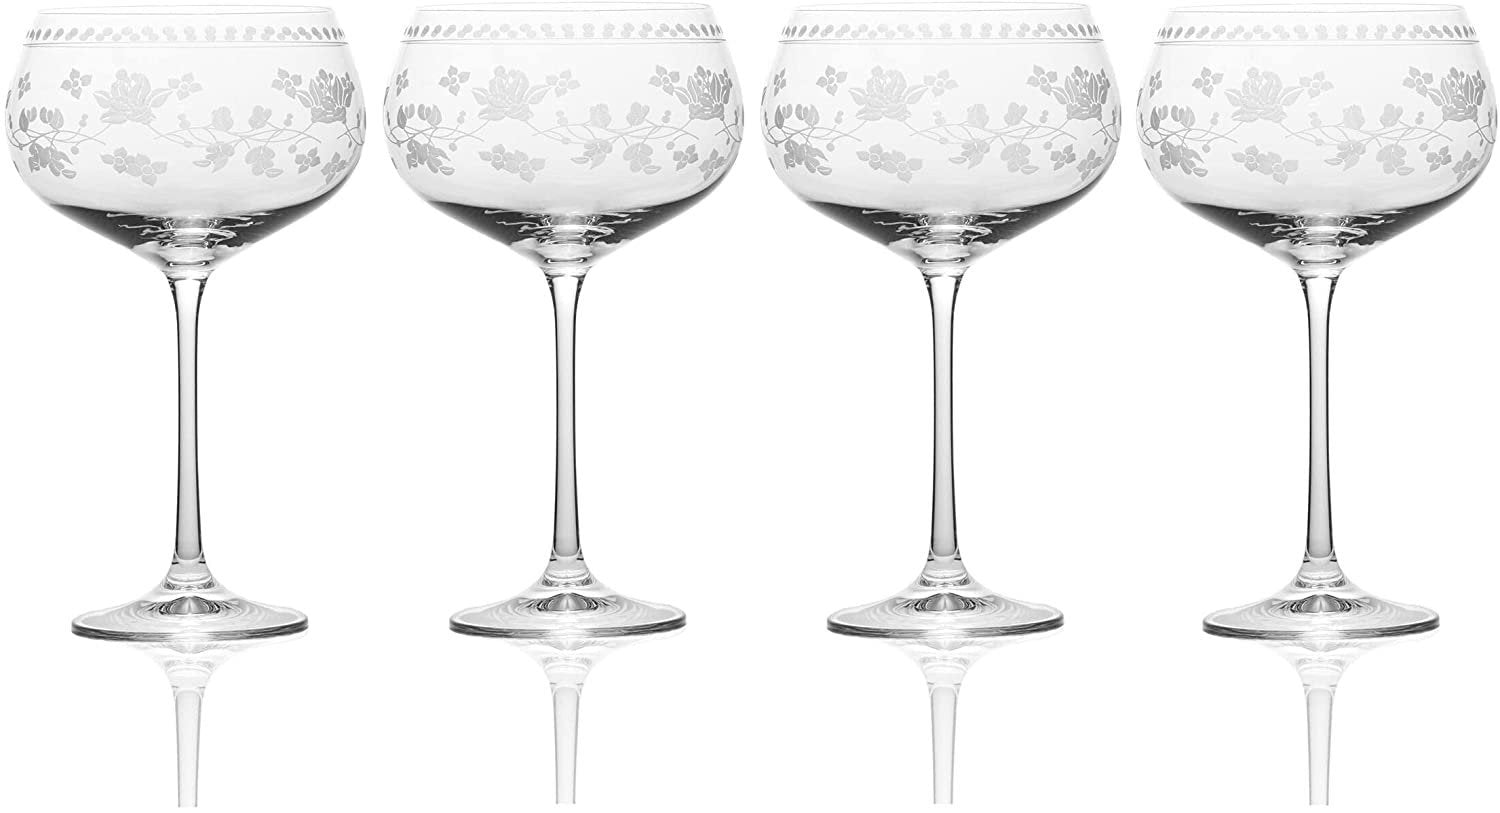 Engraved Wine Glasses - Set of 4, Vintage Vine Design – Frill